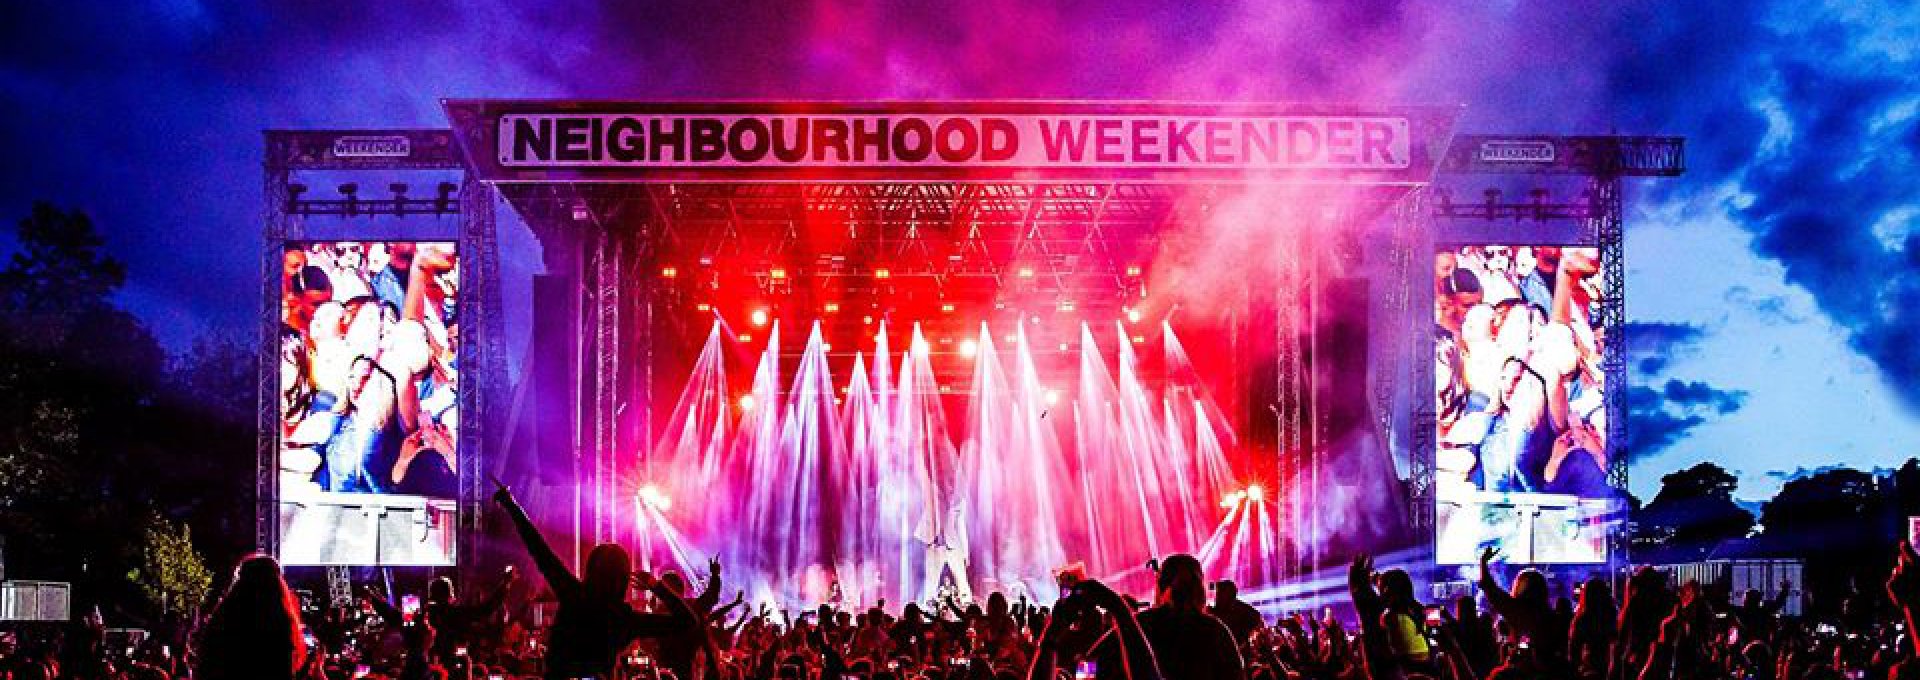 Neighbourhood Weekender Stage 2019